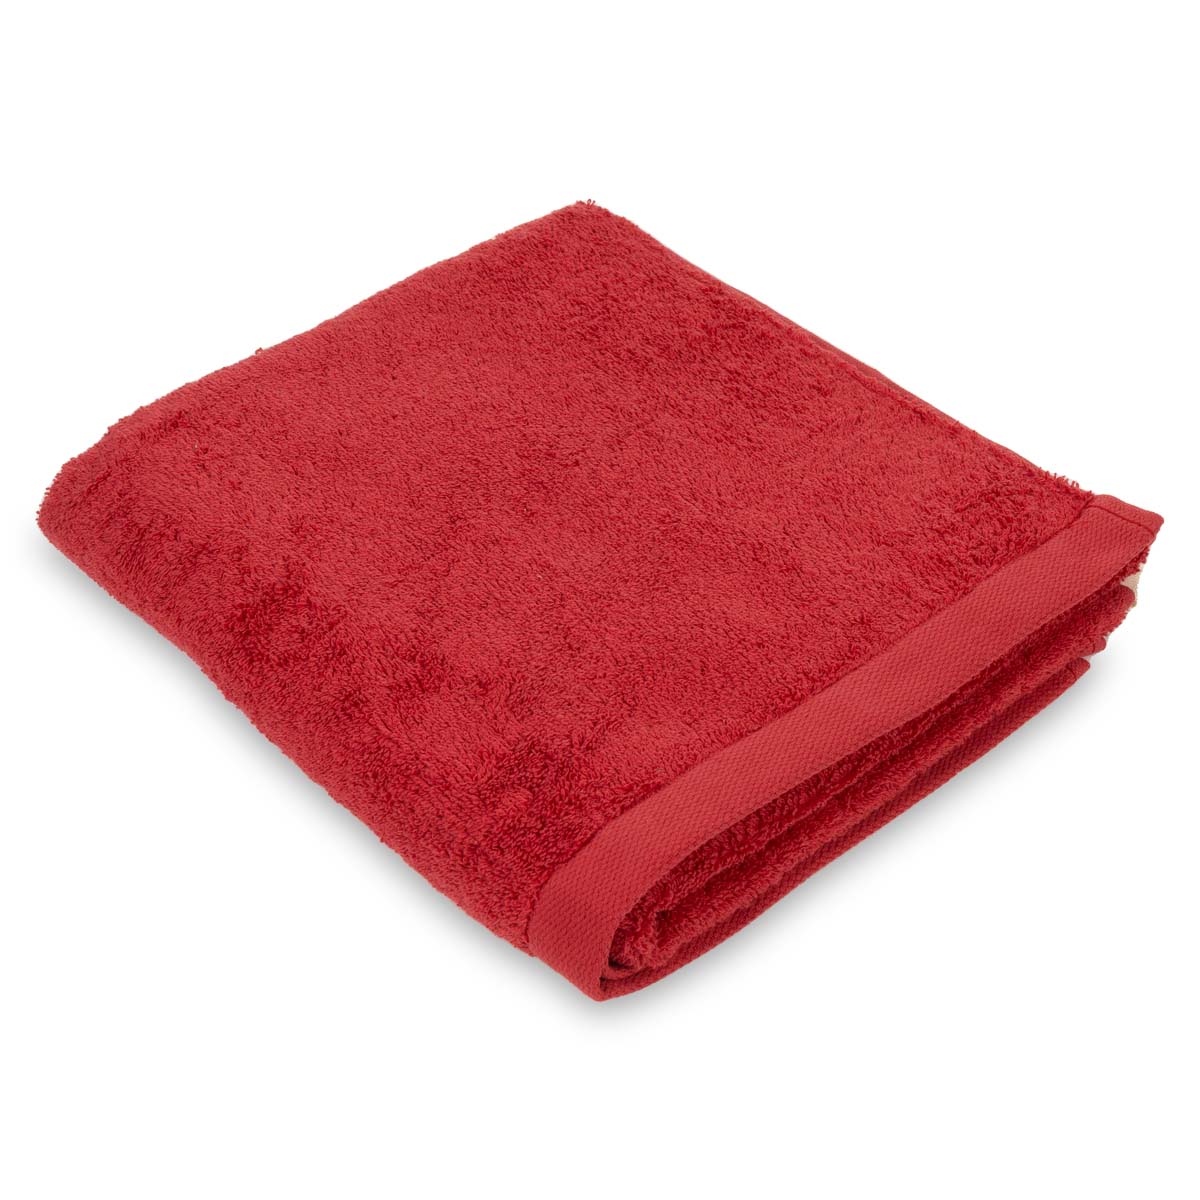 Полотенце махровое Lameirinho Aqua 50x100см, цвет красный полотенце vossen pure 50x100см красный